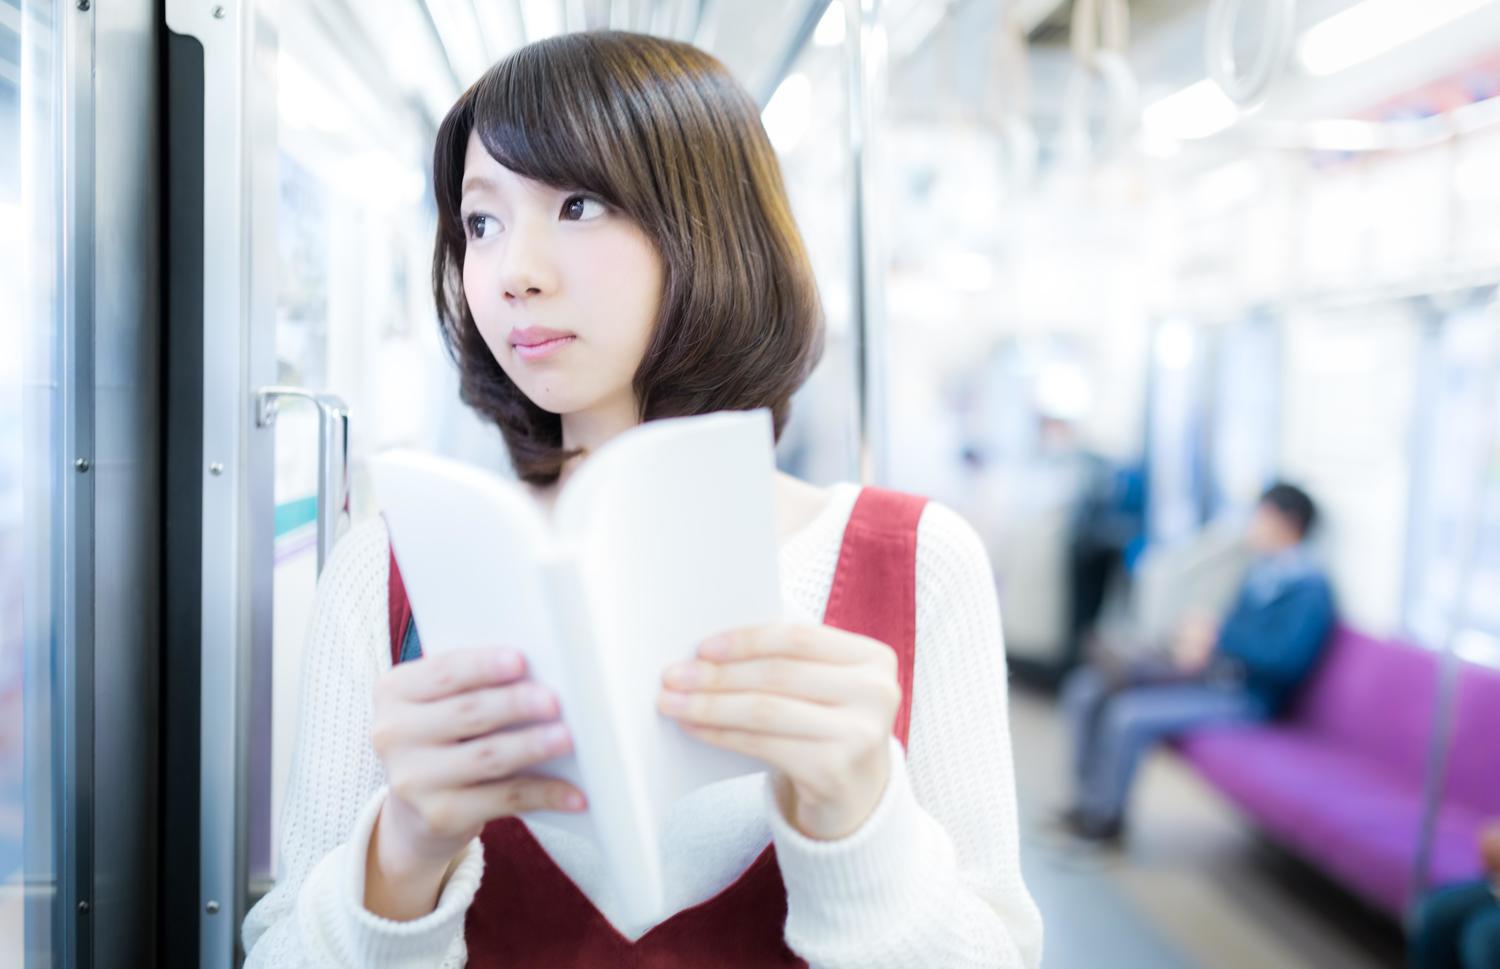 Milan reccomend Japanese girls on train